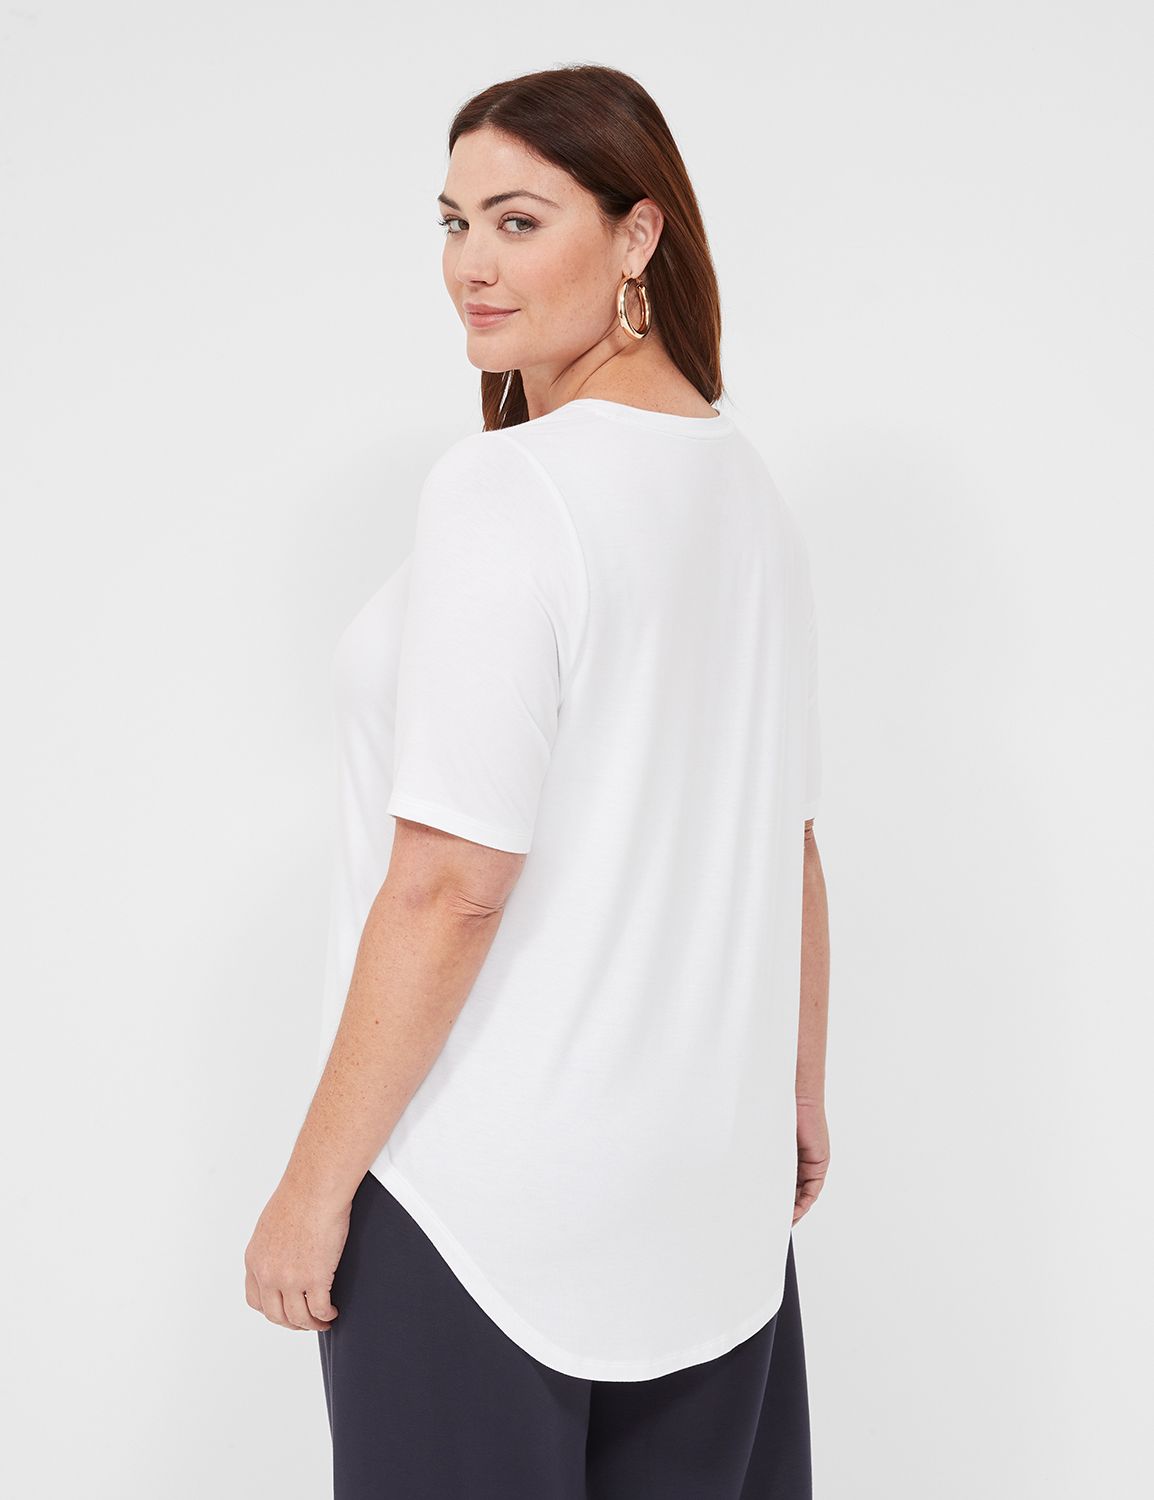 Perfect Sleeve - Plus Size Short Sleeve Tee Shirts | Lane Bryant